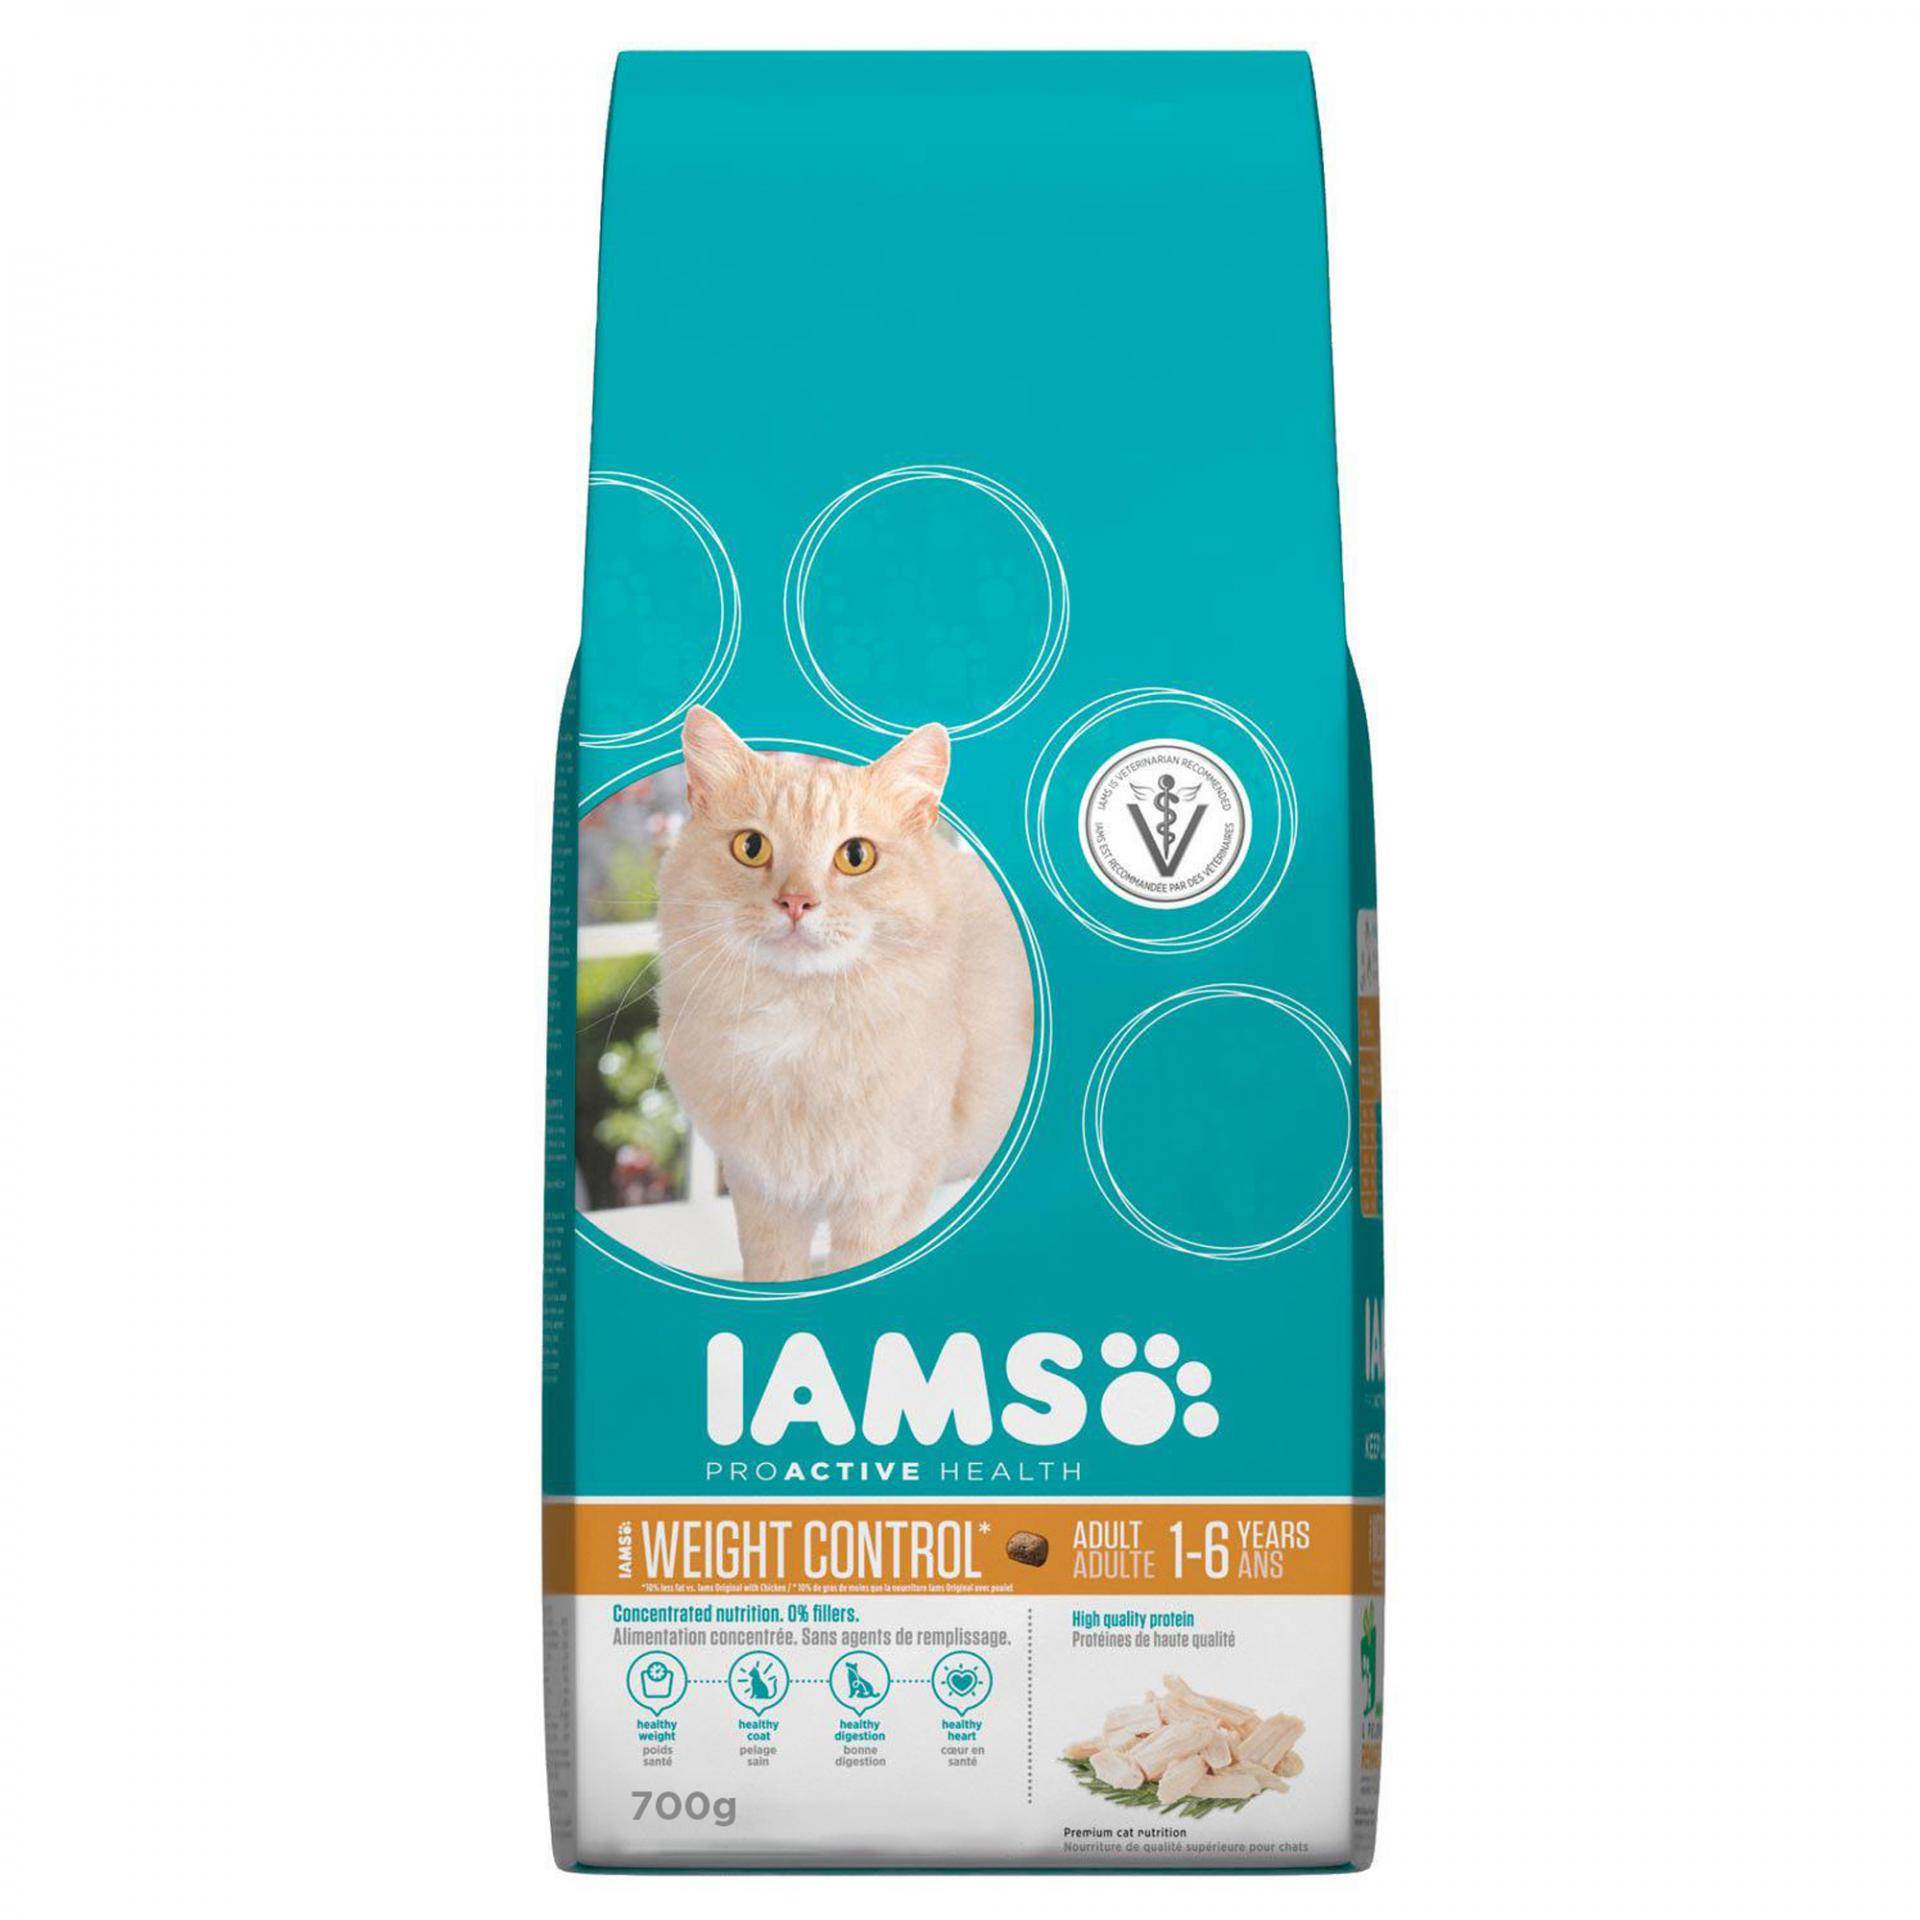 Корм для кошек farminа (фармина): плюсы и минусы, отзывы ветеринаров